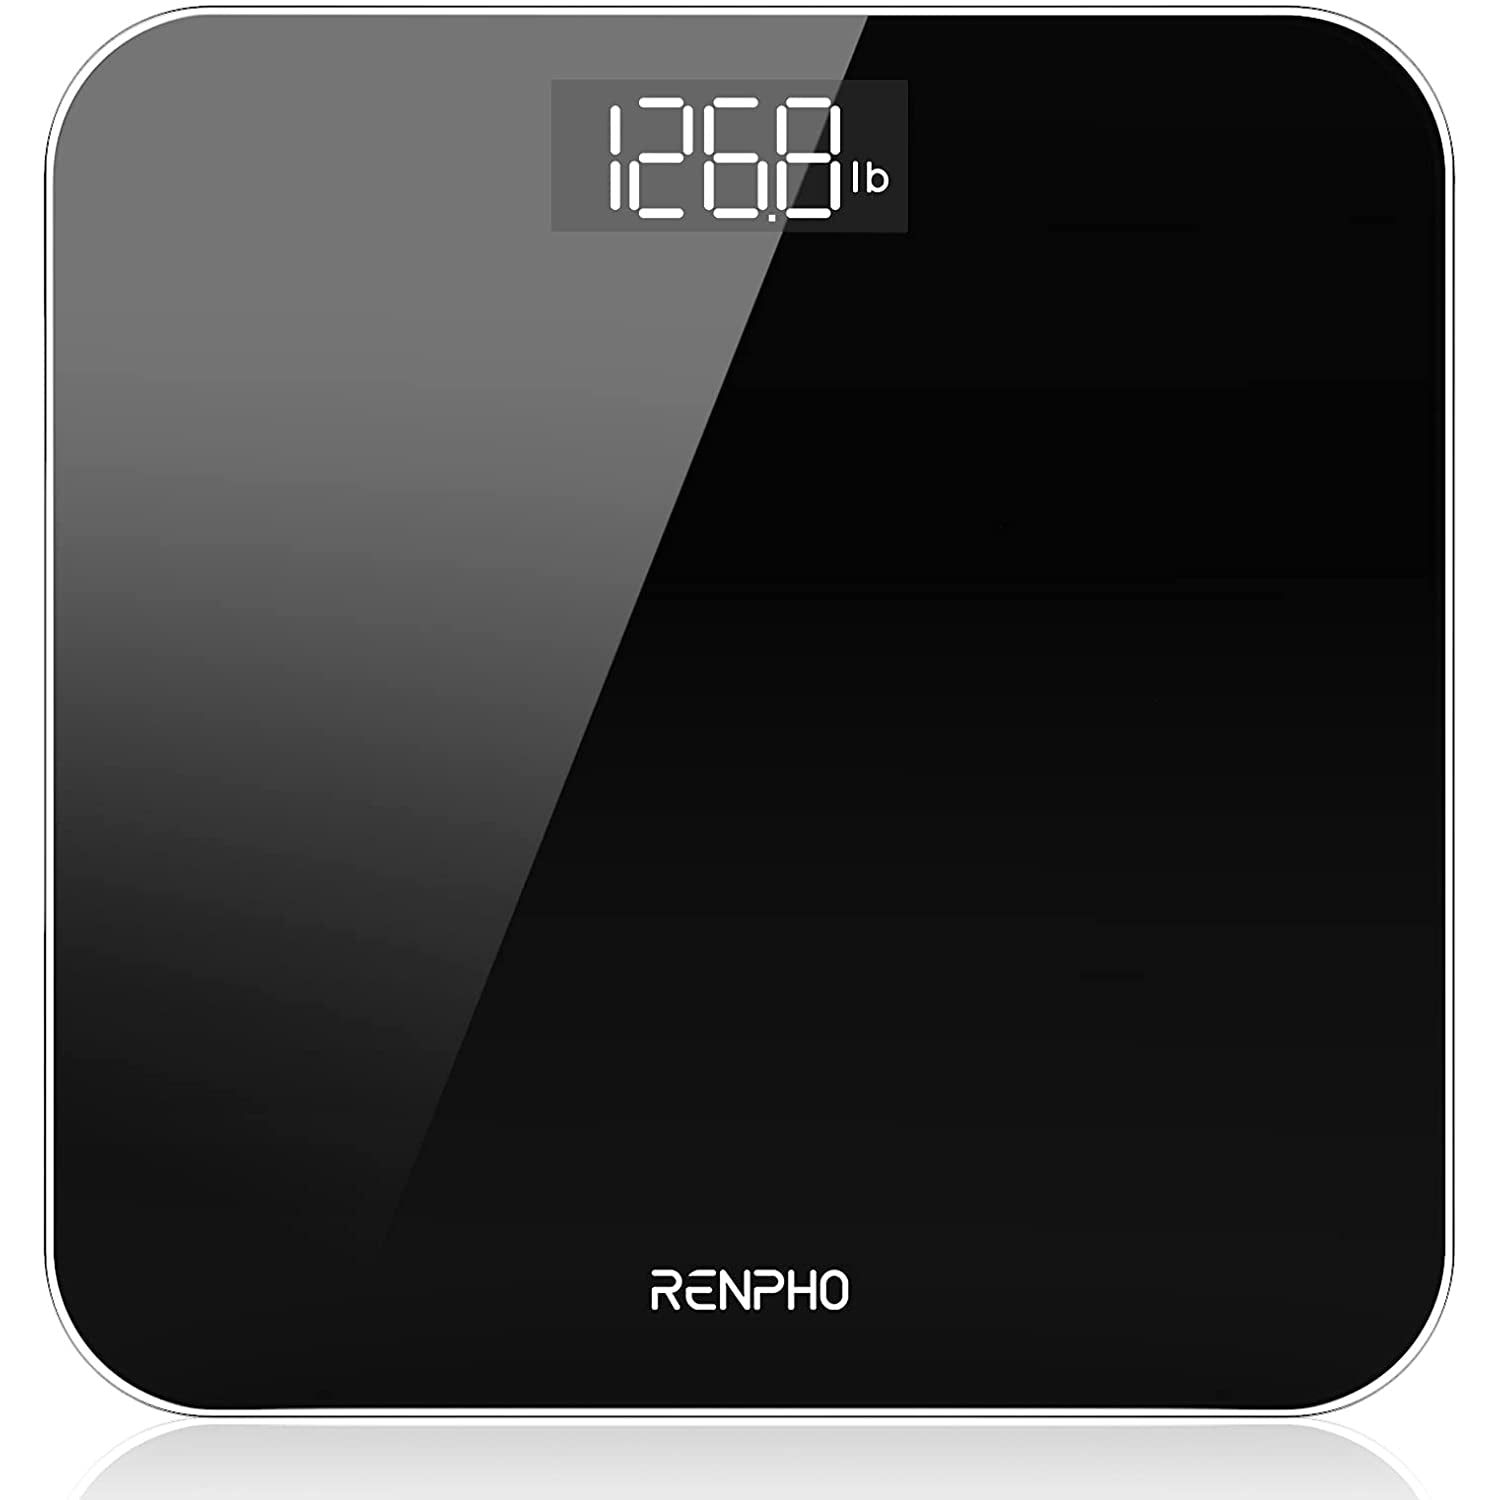 Renpho Digital Bathroom Scales Weighing Scale in Black